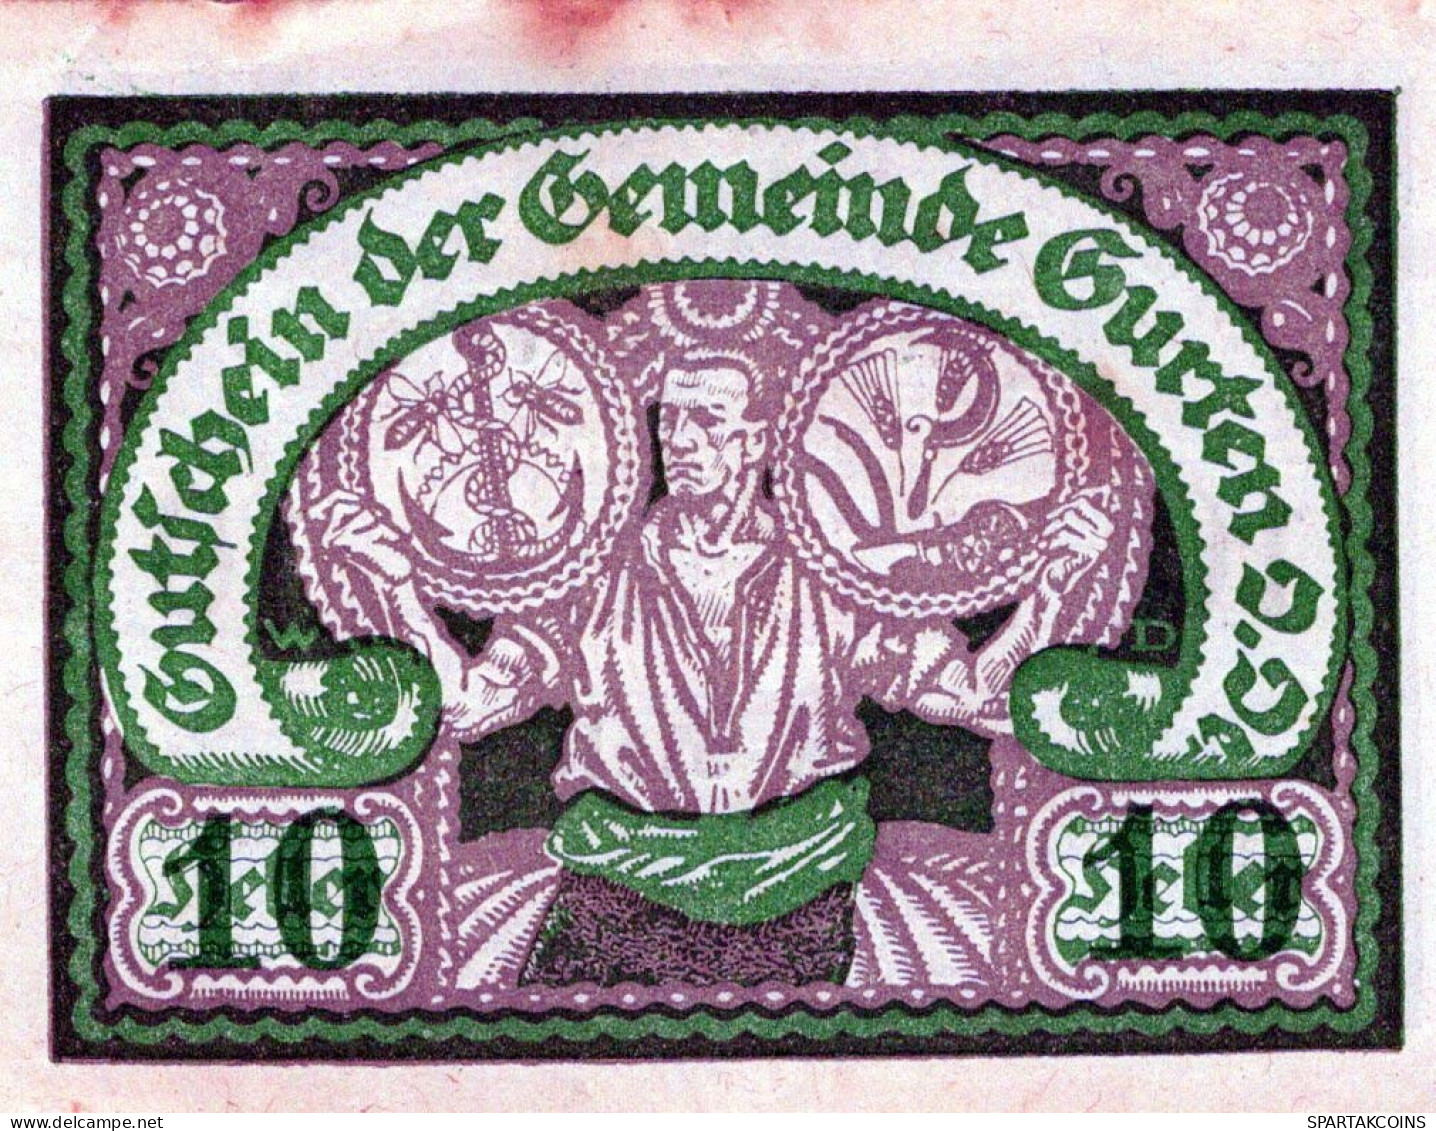 10 HELLER 1920 Stadt GURTEN Oberösterreich Österreich Notgeld Banknote #PI333 - [11] Lokale Uitgaven